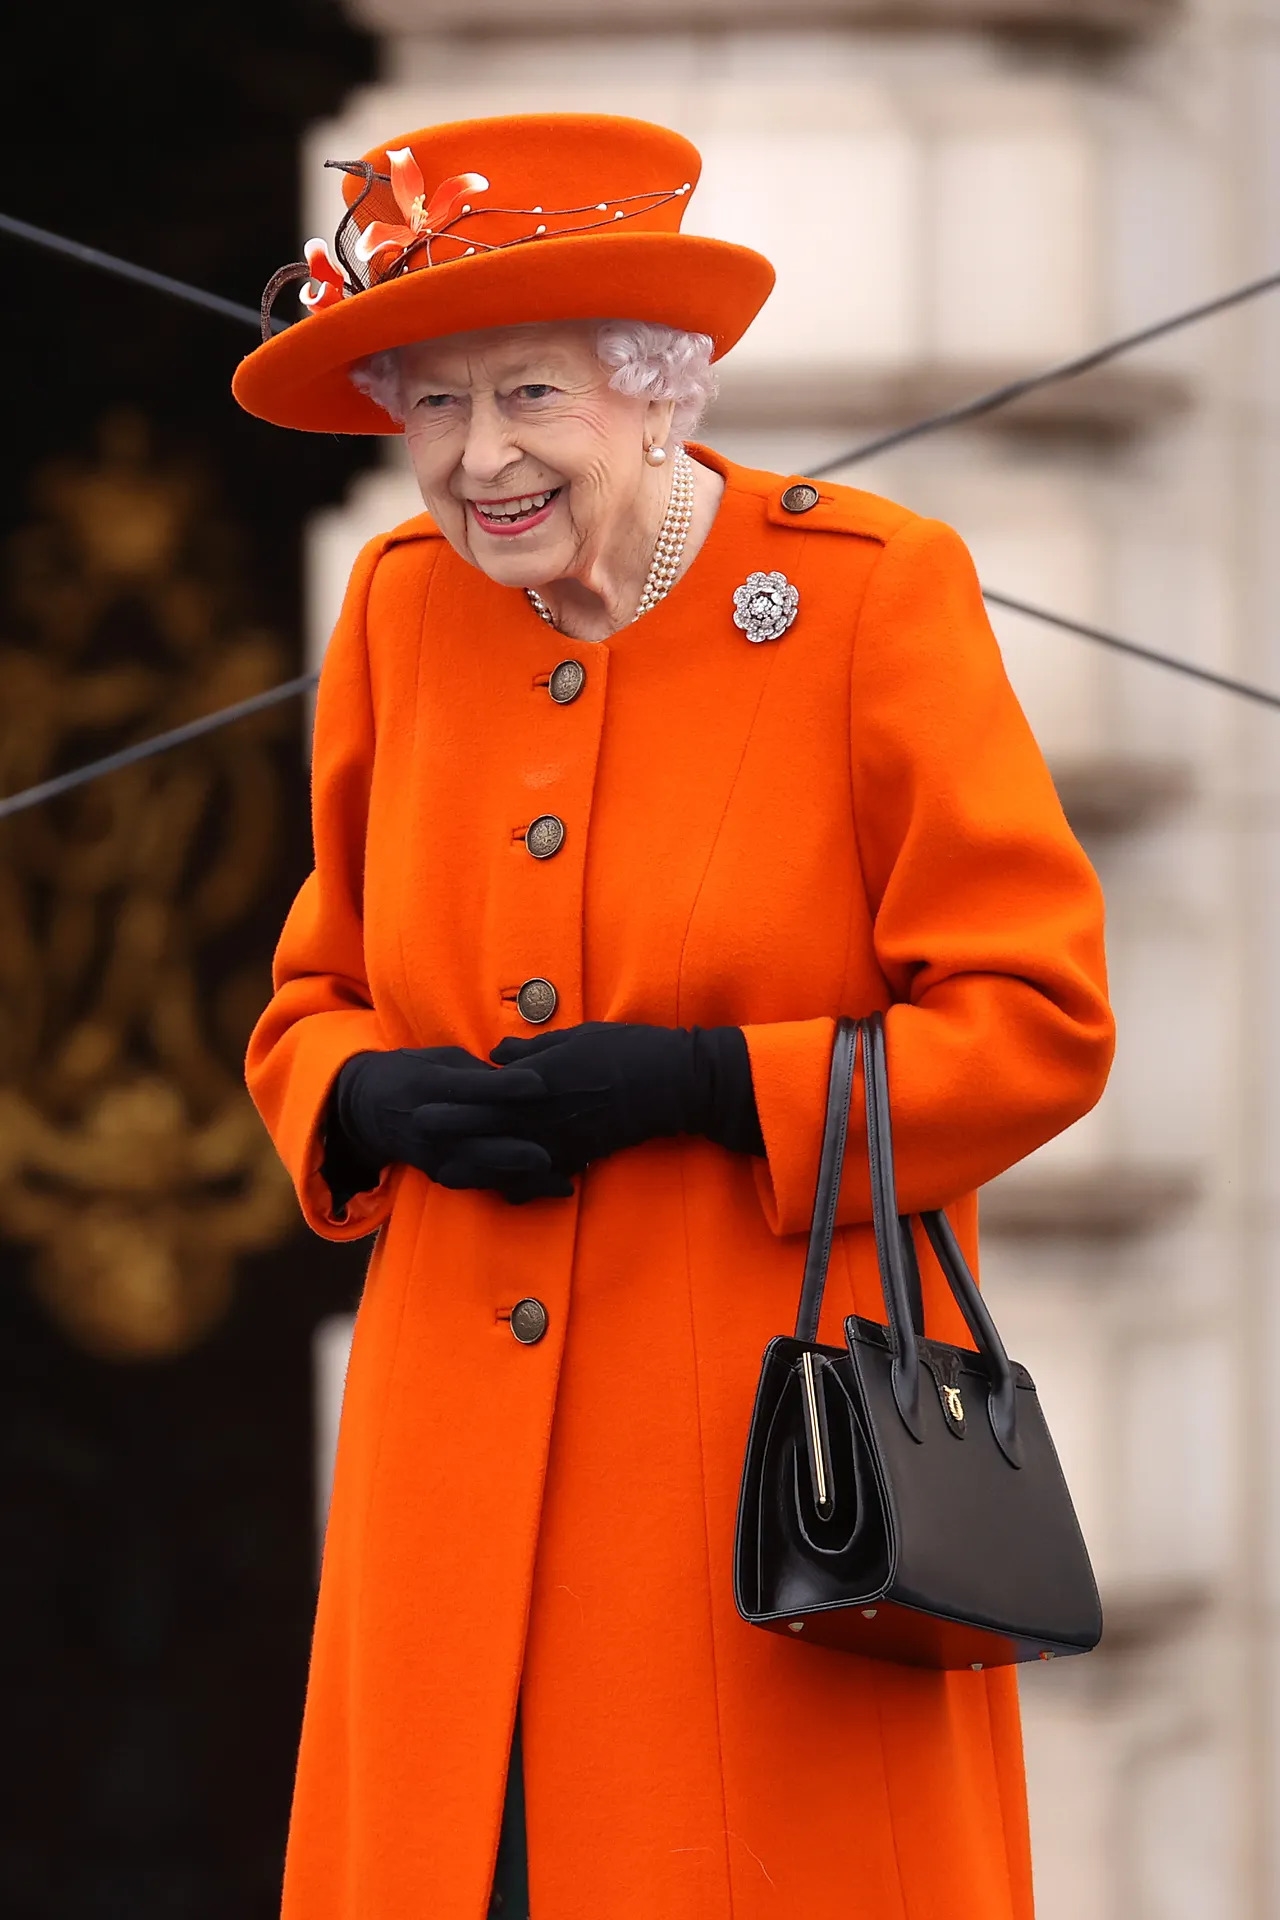 Màu cam tươi mới trong buổi ra mắt The Queen's Baton Relay cho Birmingham 2022 (Thế vận hội của Khối thịnh vượng chung lần thứ XXII) tại Cung điện Buckingham năm 2021